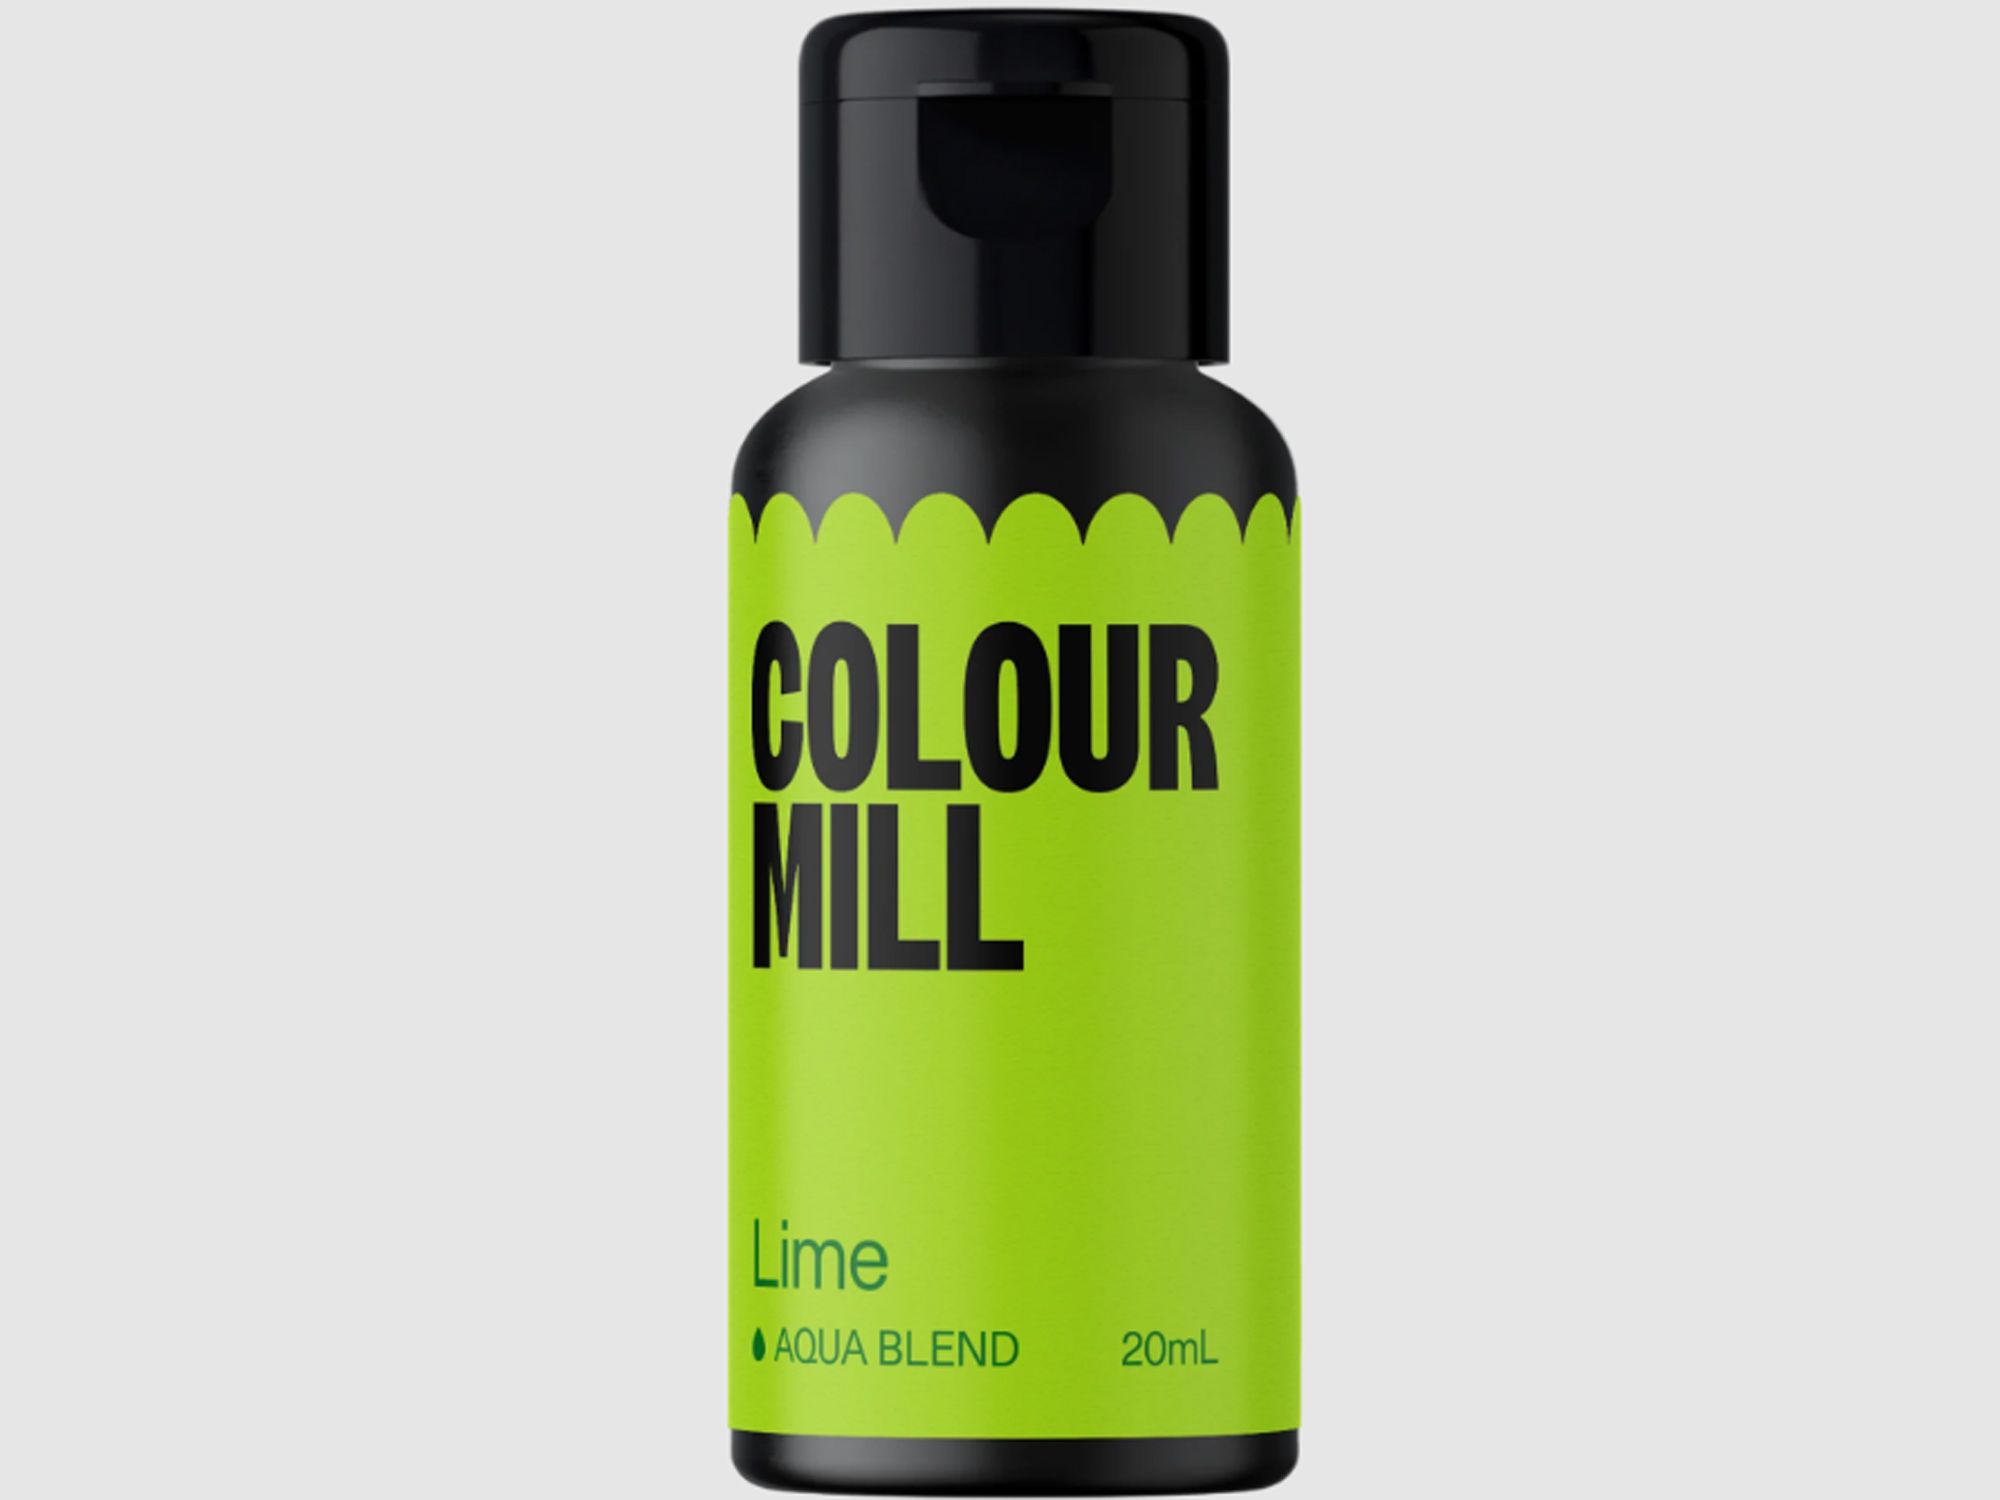 Colour Mill Lime (Aqua Blend) 20ml